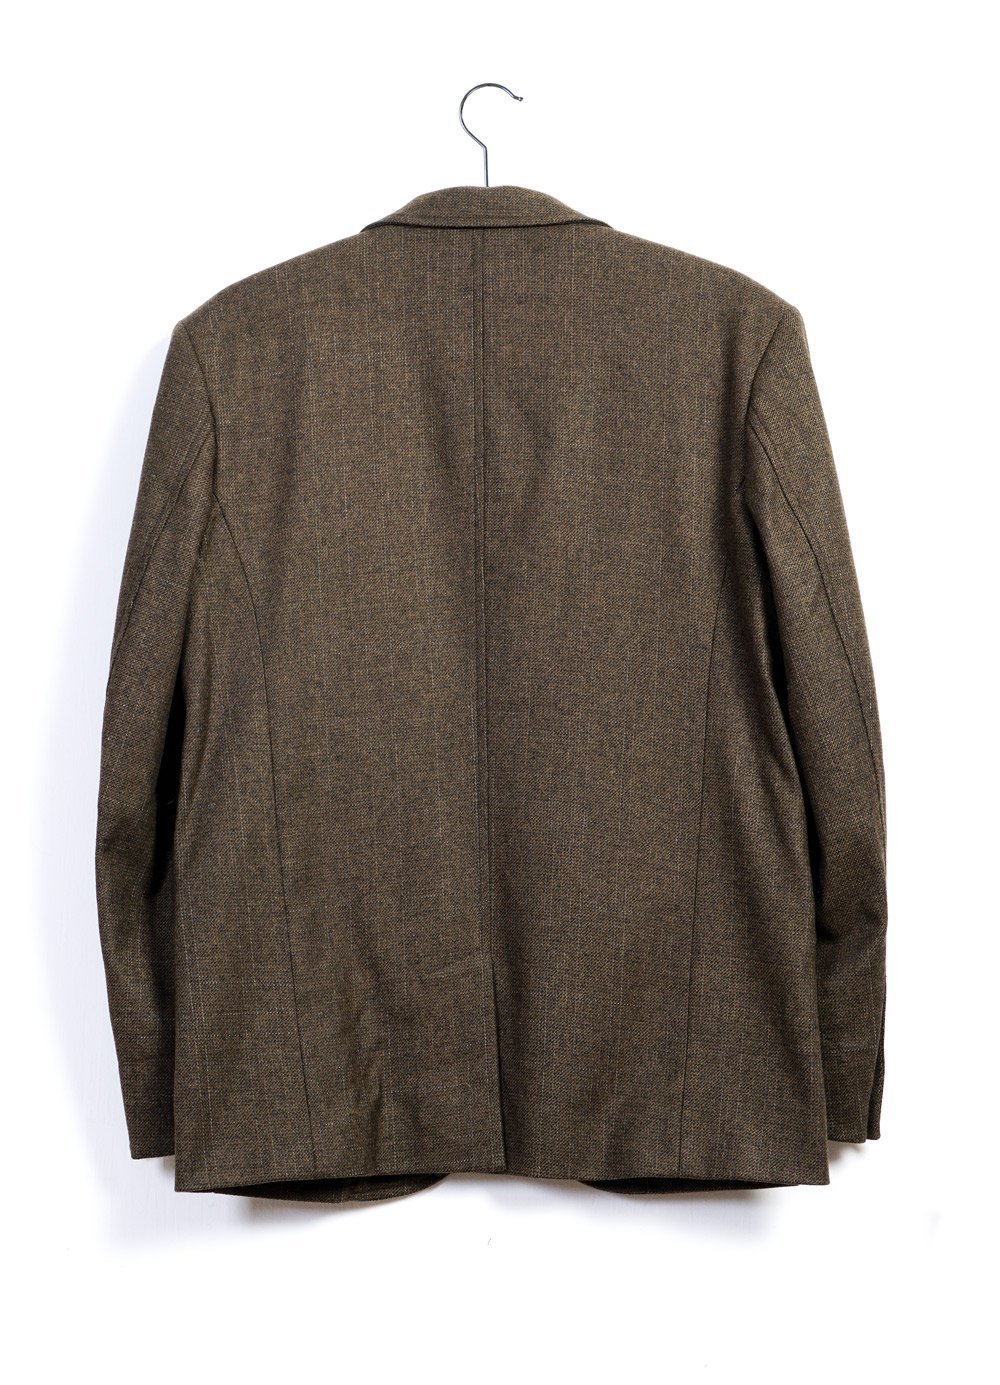 FREDERIK | Informal 2-button Blazer | October | €400 -HANSEN Garments- HANSEN Garments